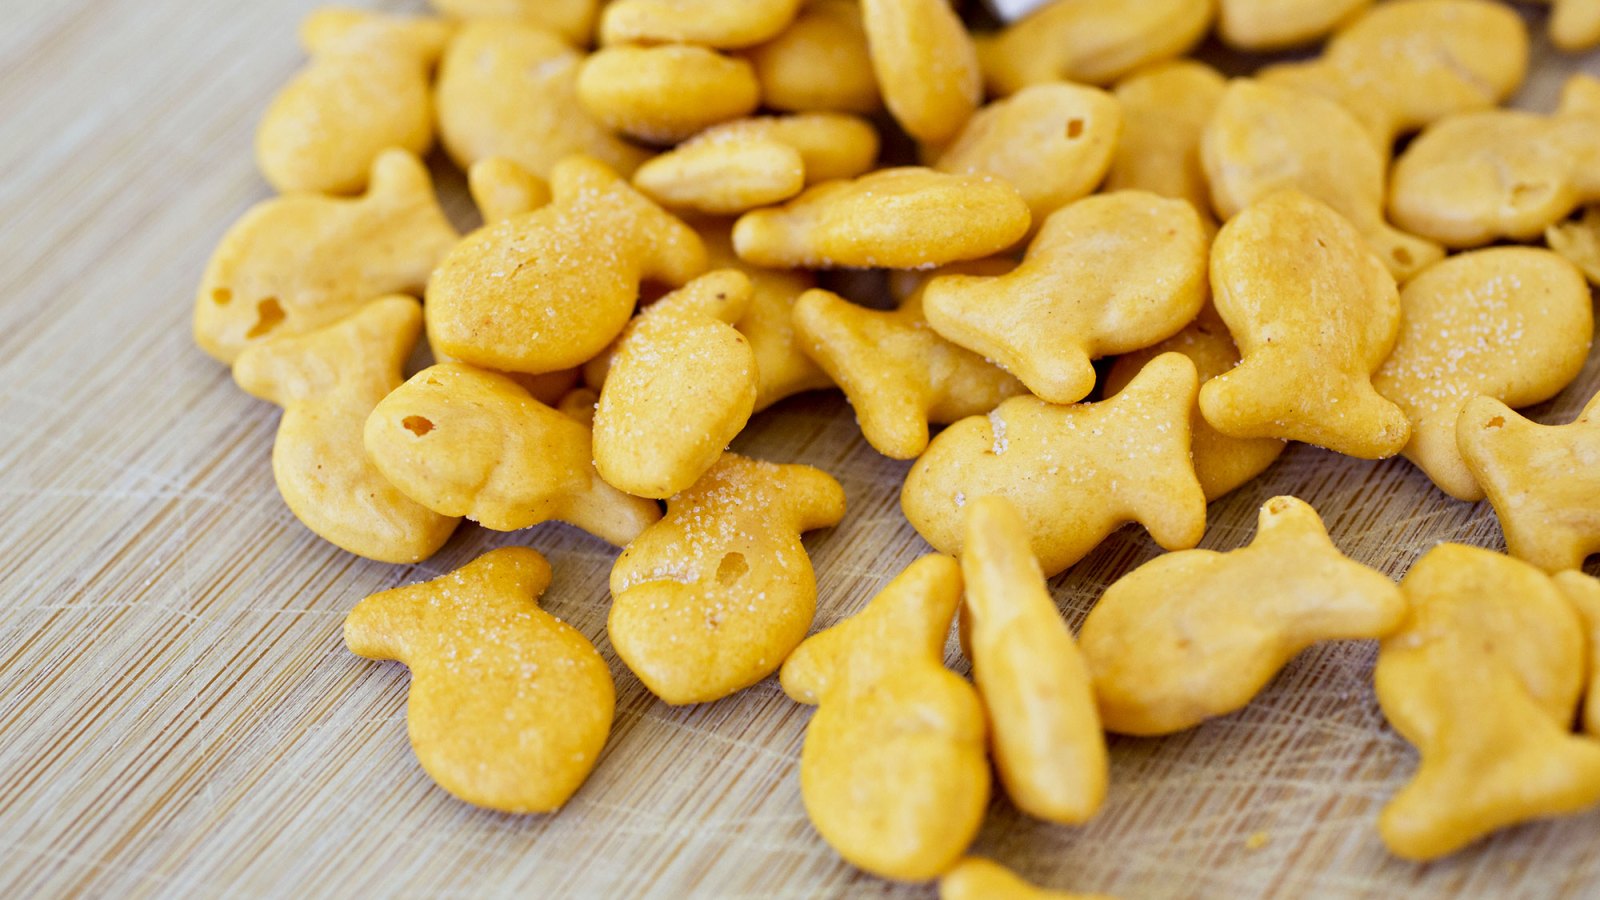 Goldfish Crackers recall